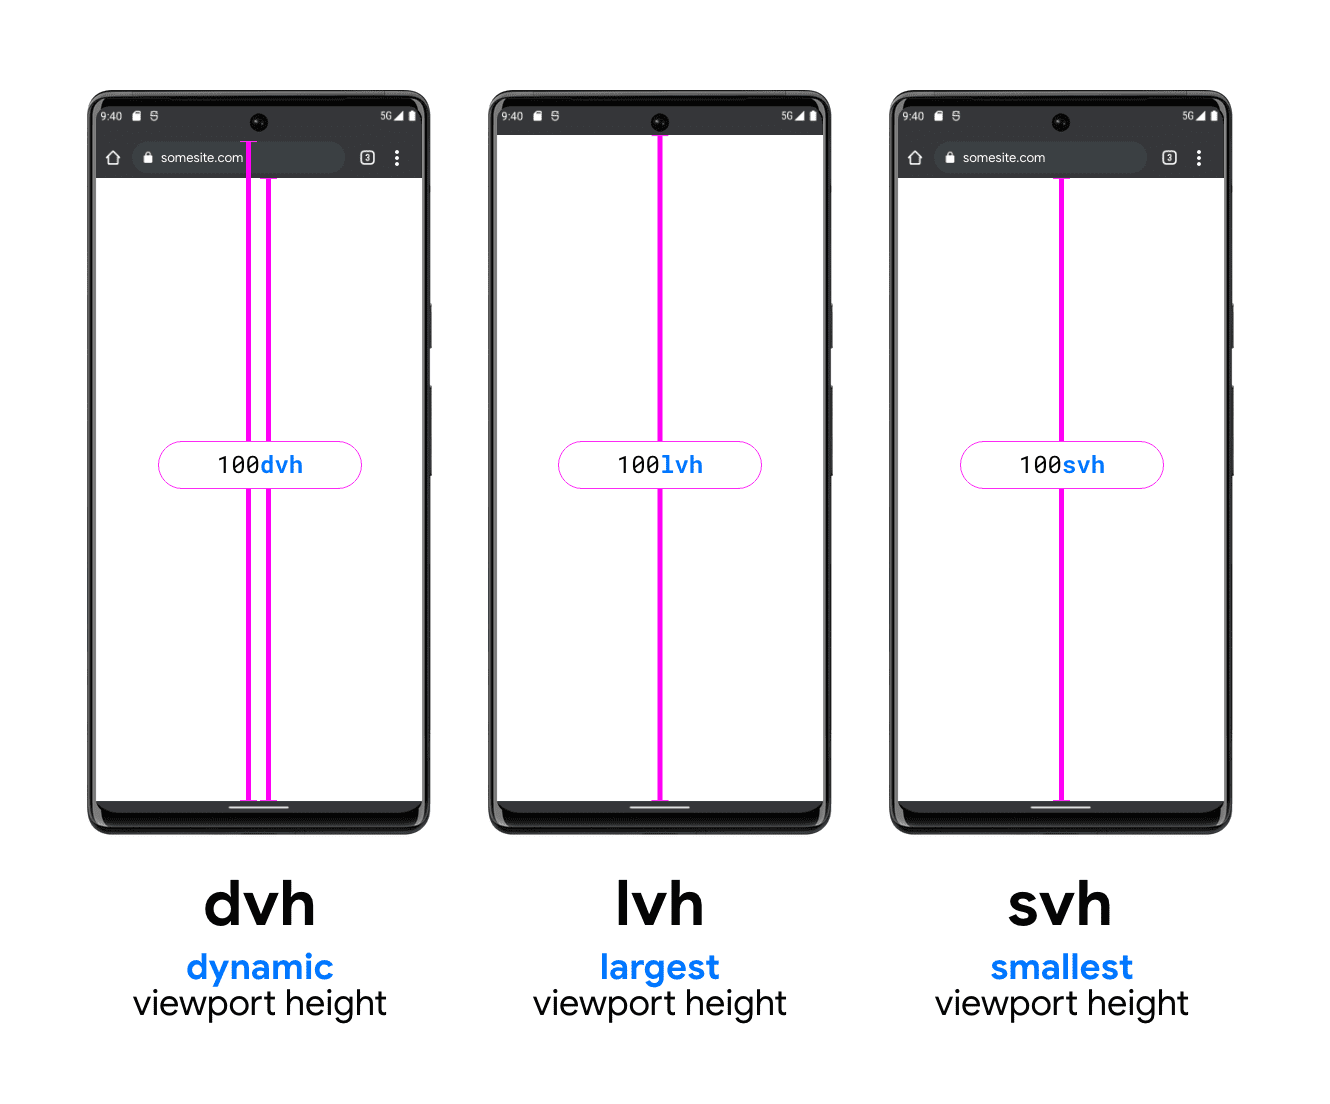 Illustration montrant trois téléphones pour illustrer DVH, LVH et SVH L&#39;exemple de téléphone DVH comporte deux lignes verticales : l&#39;une entre le bas de la barre de recherche et le bas de la fenêtre d&#39;affichage, et l&#39;autre entre le haut de la barre de recherche (sous la barre d&#39;état système) et le bas de la fenêtre d&#39;affichage. Cela montre que DVH peut être l&#39;une de ces deux longueurs. LVH est affiché au milieu, avec une ligne entre le bas de la barre d&#39;état de l&#39;appareil et le bouton de la fenêtre d&#39;affichage du téléphone. Le dernier est l&#39;exemple d&#39;unité SVH, qui affiche une ligne allant du bas de la barre de recherche du navigateur au bas de la fenêtre d&#39;affichage.